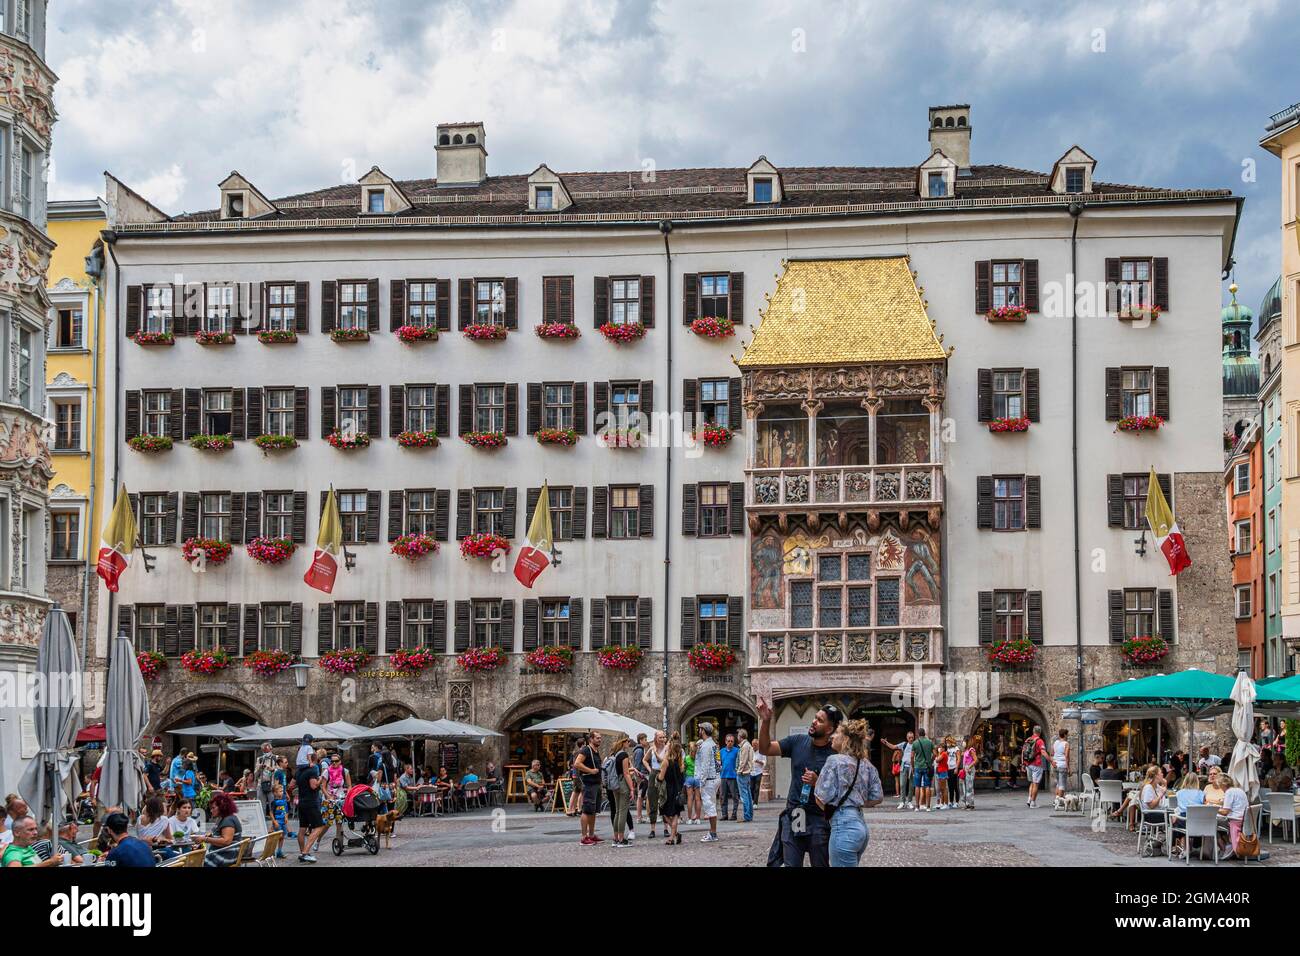 Das Goldene Dachl ist das Wahrzeichen von Innsbruck, eine Loggia, die mit goldenen Kupferfliesen am Ende der Via Maria-Theresien-Straße bedeckt ist. Stockfoto